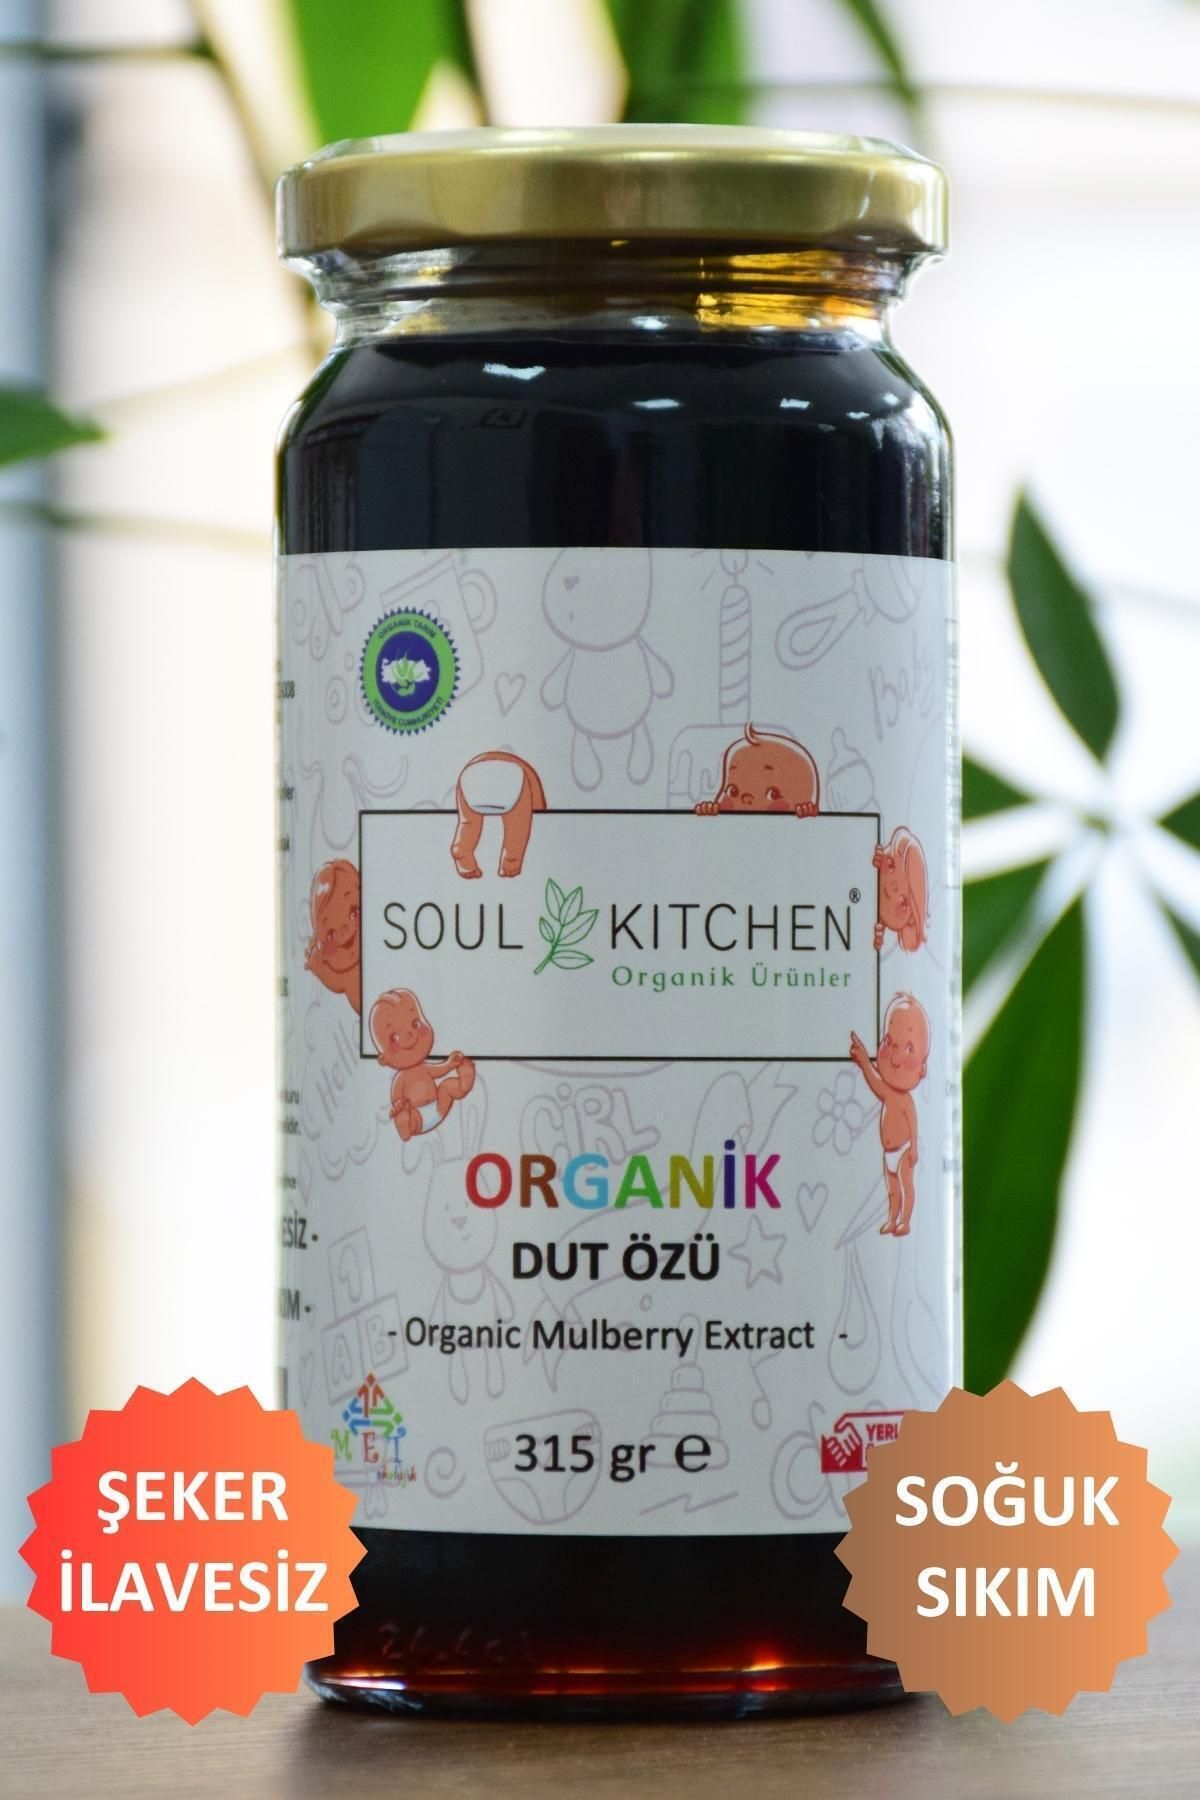 Soul Kitchen Organik Ürünler Organik Bebek Dut Özü 315gr (SOĞUK SIKIM) (ŞEKER İLAVESİZ)